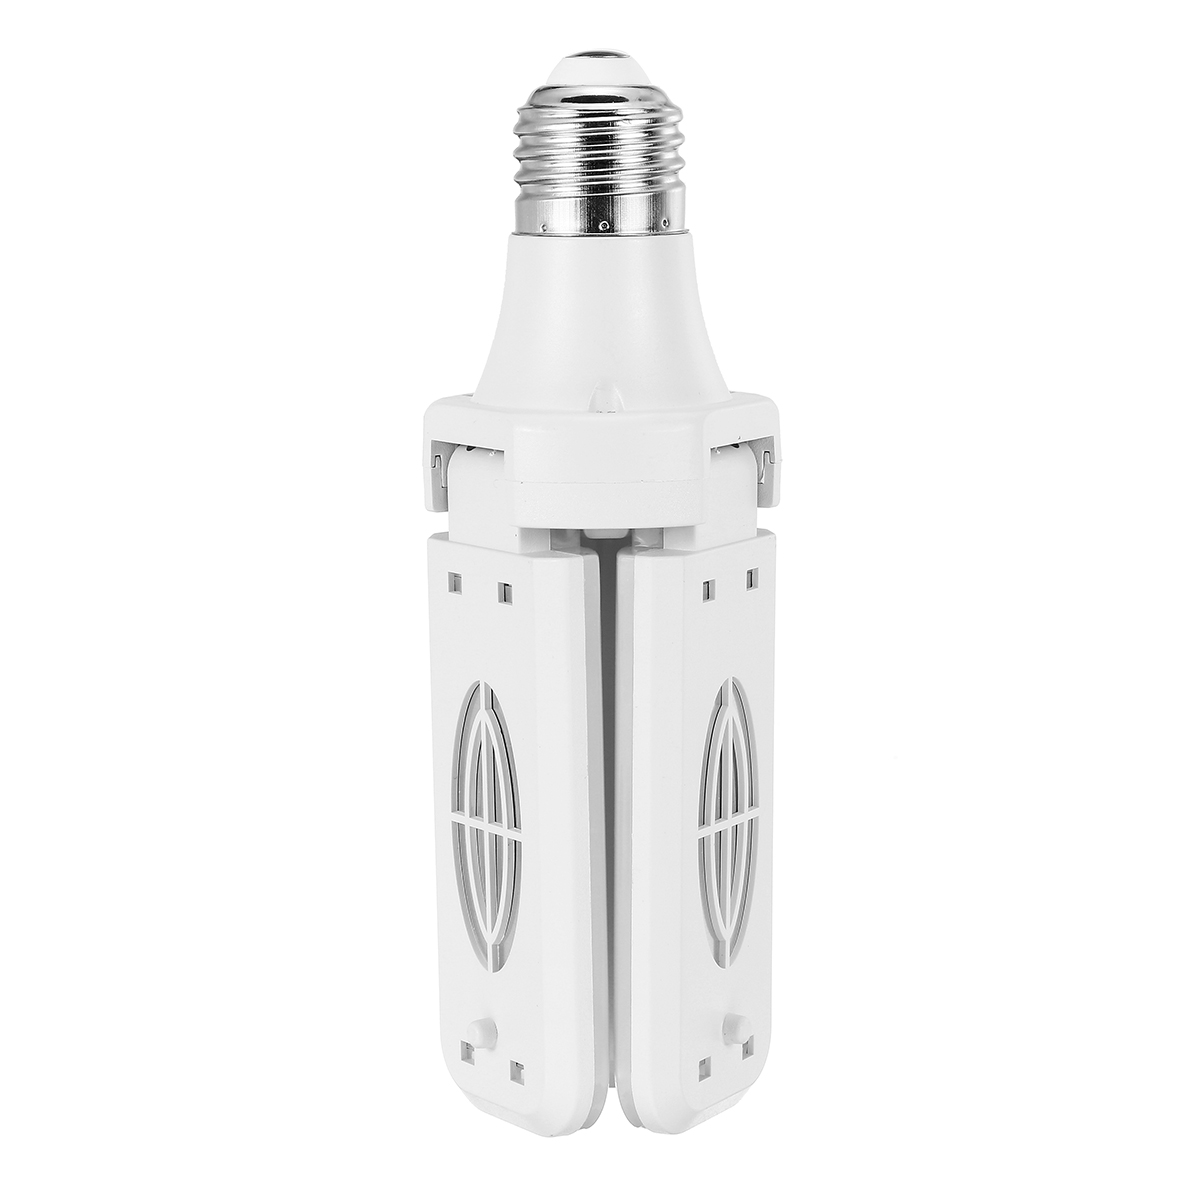 E27-LED-Garage-Light-Bulb-Deformable-Ceiling-Fixture-Lights-Shop-Workshop-Lamp-AC175-265V-1789971-8